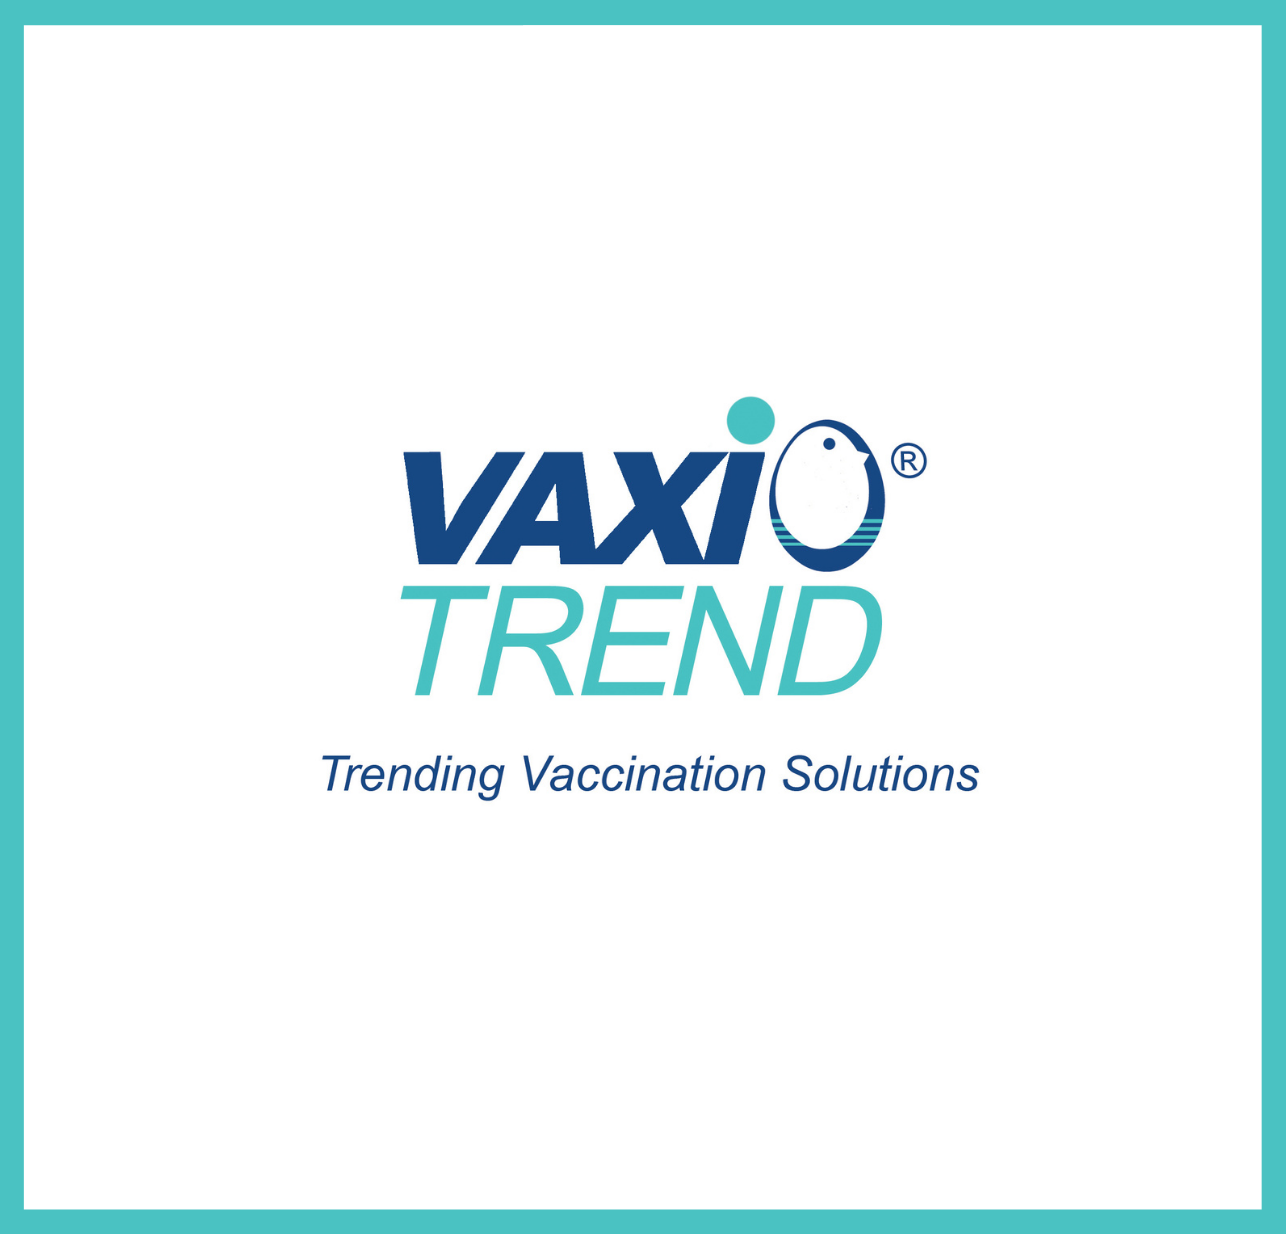 Vaxio Trend